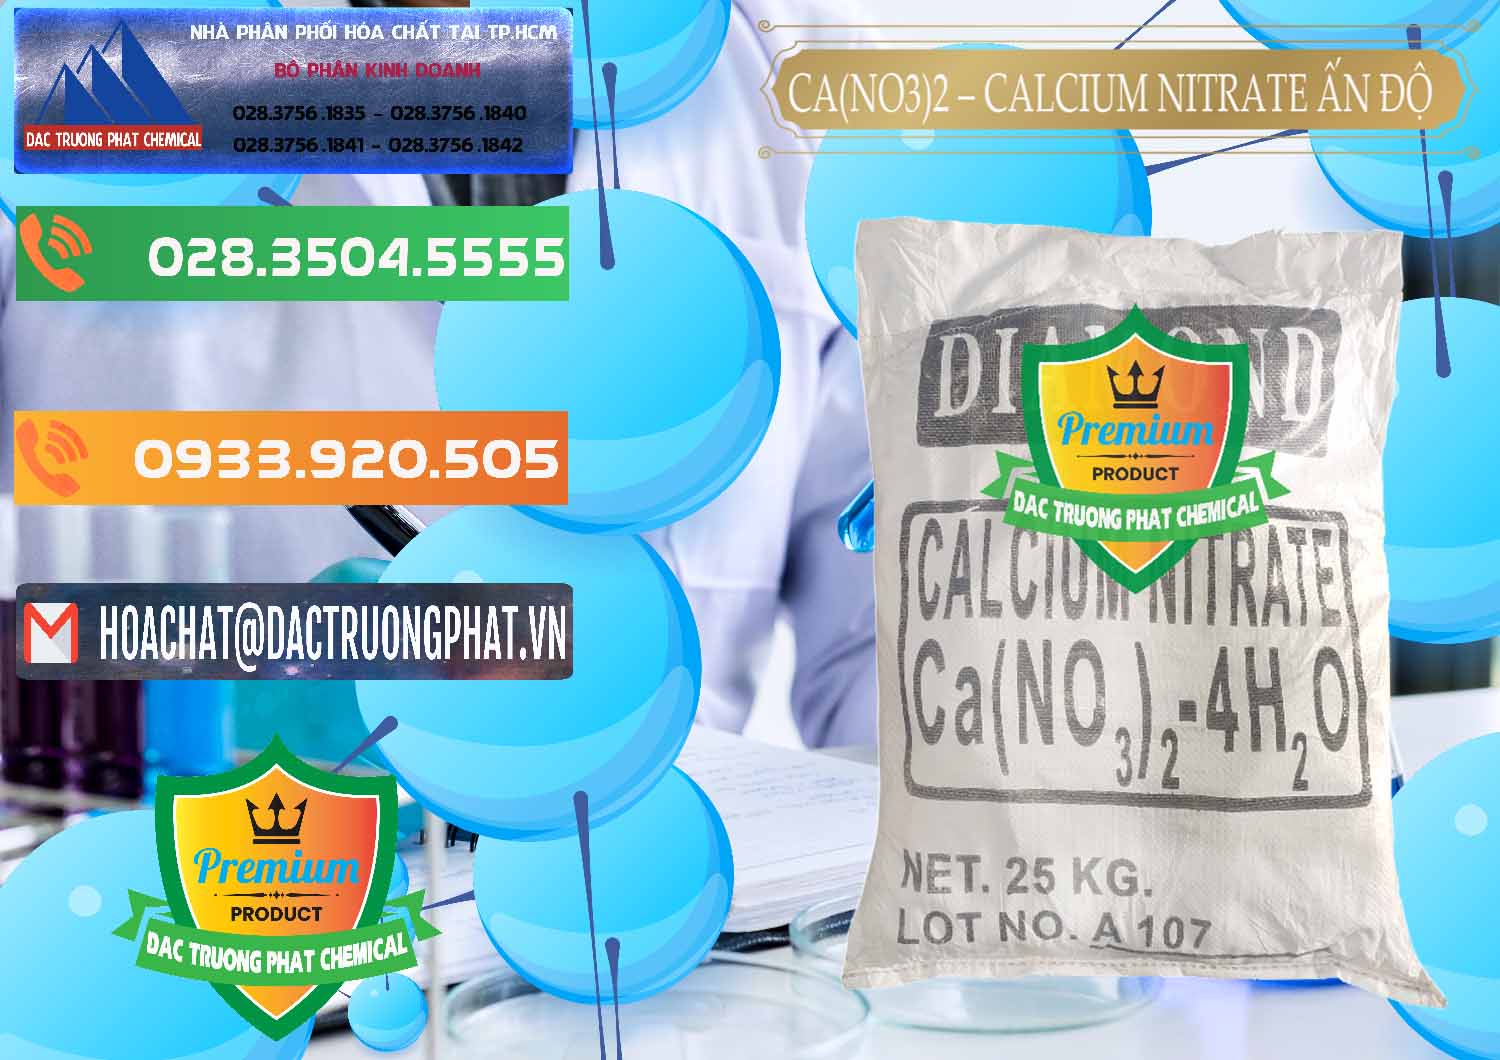 Đơn vị chuyên bán - cung ứng CA(NO3)2 – Calcium Nitrate Ấn Độ India - 0038 - Công ty cung ứng và phân phối hóa chất tại TP.HCM - hoachatxulynuoc.com.vn